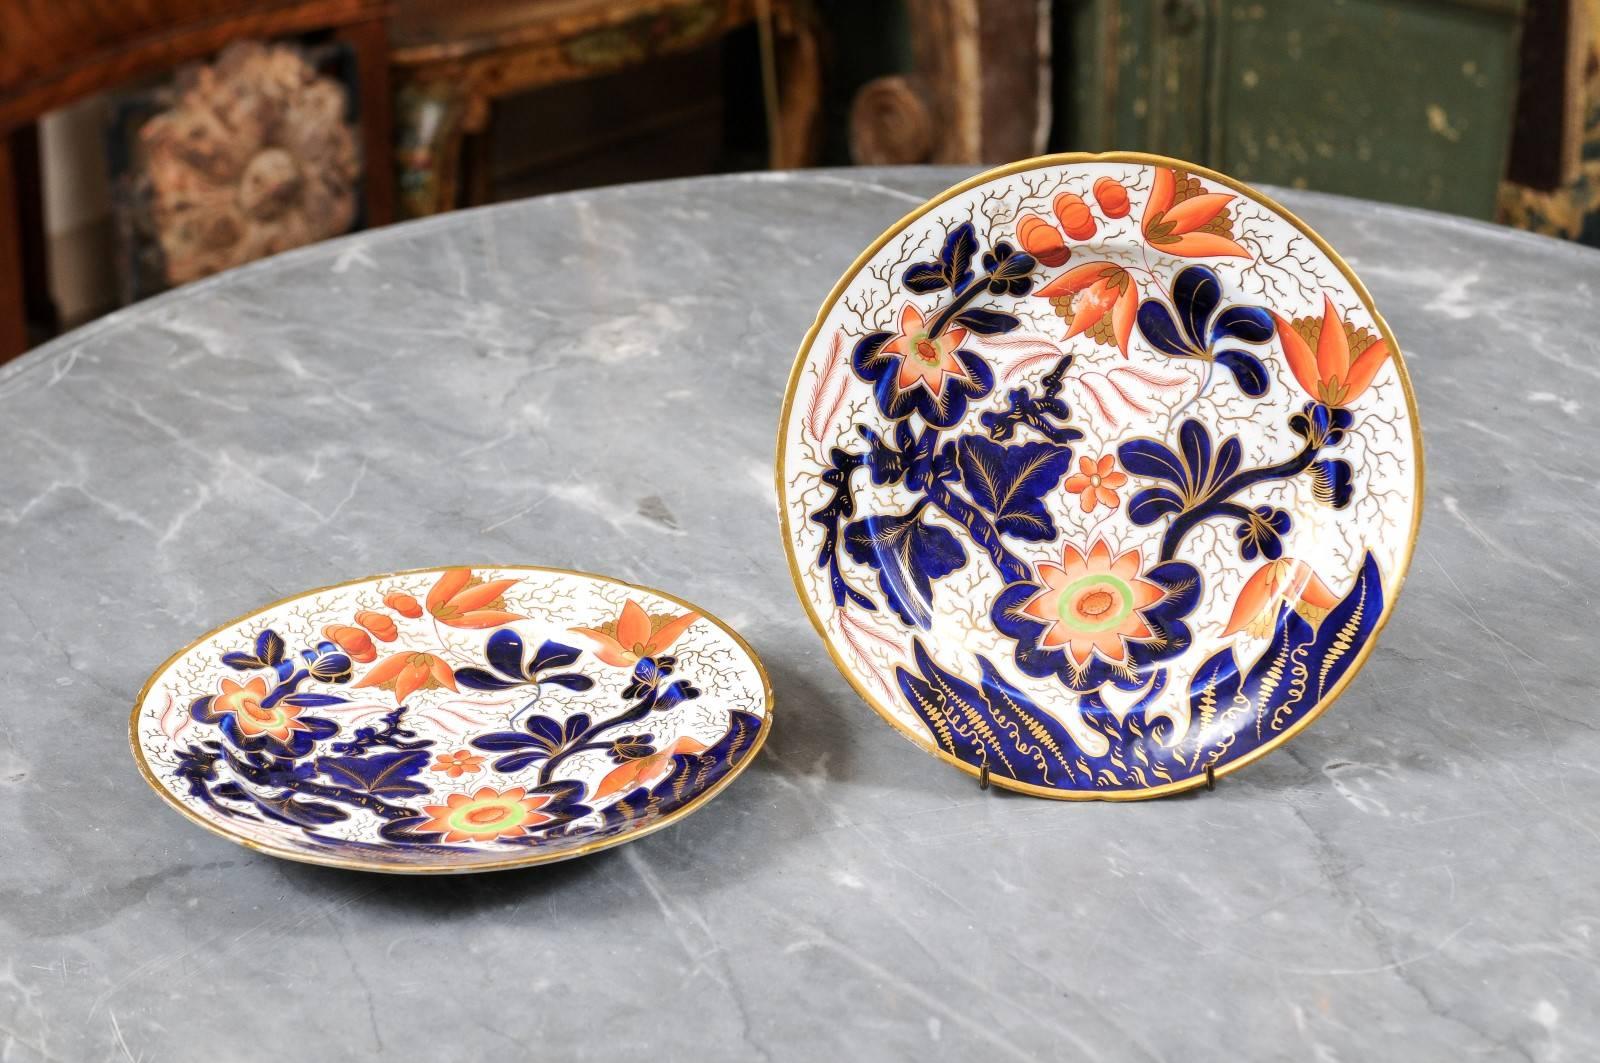 Paire de grandes assiettes en porcelaine Coalport avec bord et accents dorés, décor floral en bleu, rouge et vert. angleterre, 19e siècle. Le prix est pour la paire d'assiettes.